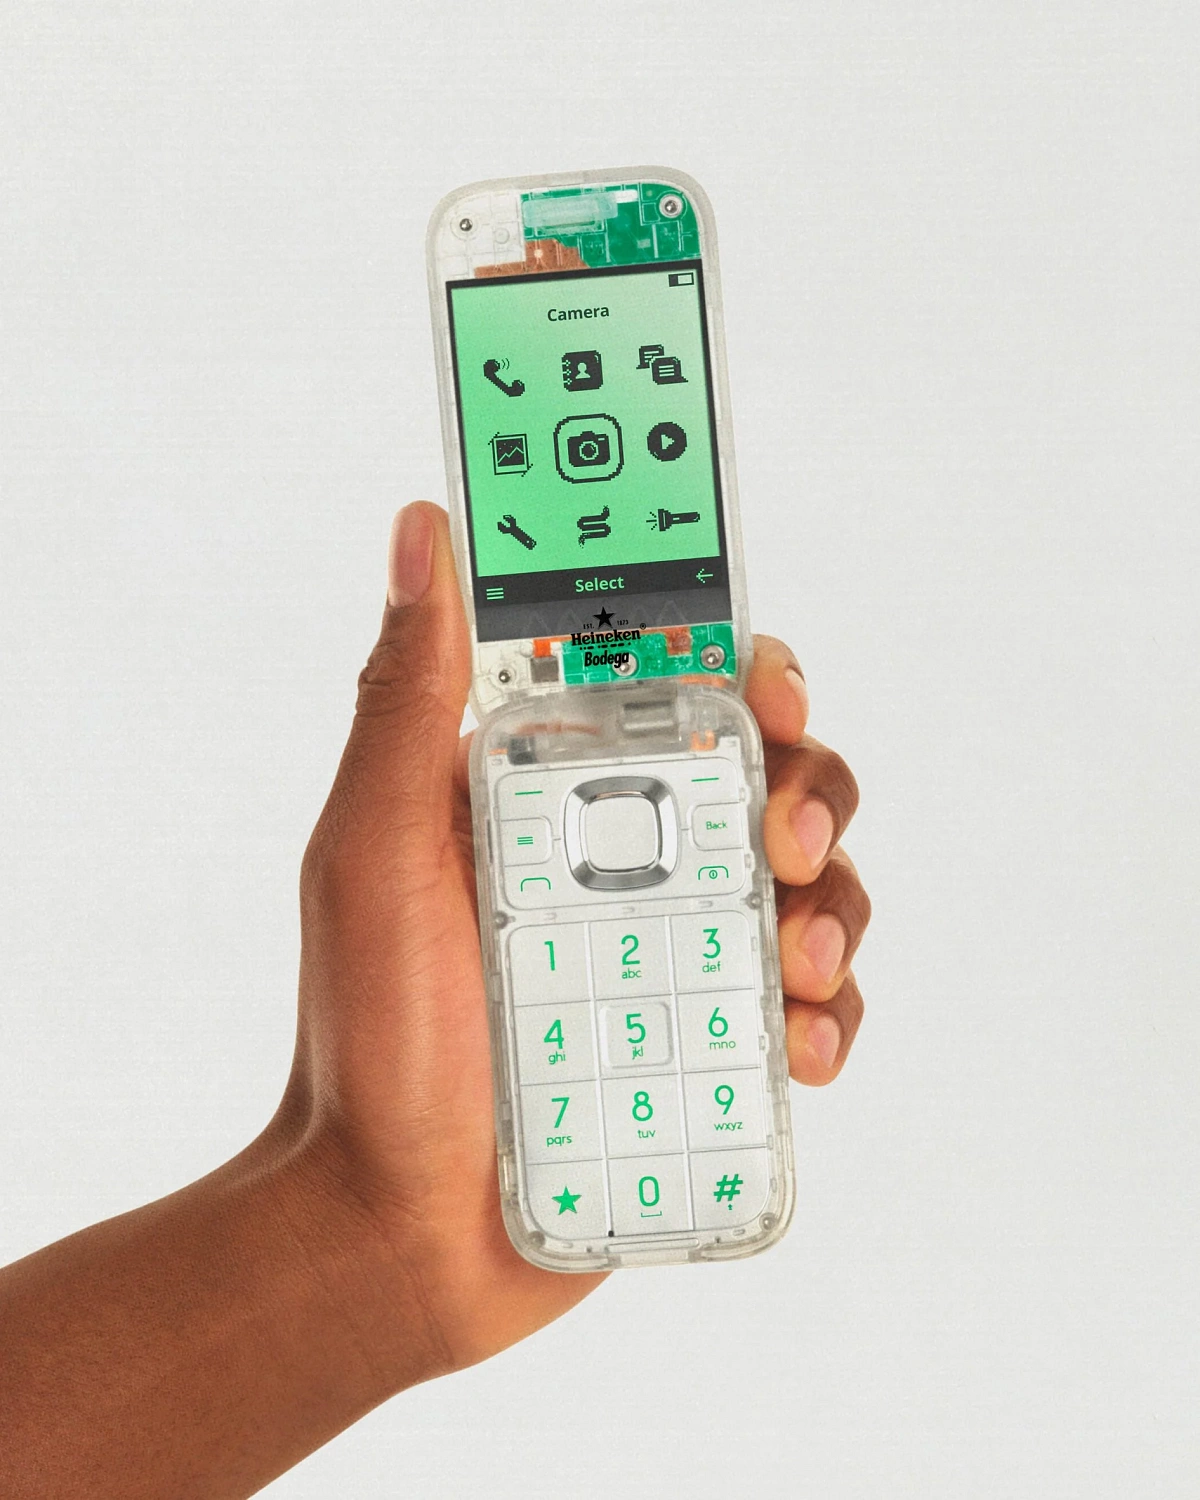 Heineken и Bodega представили телефон, вызывающий чувство ностальгии для поколения Z и миллениалов